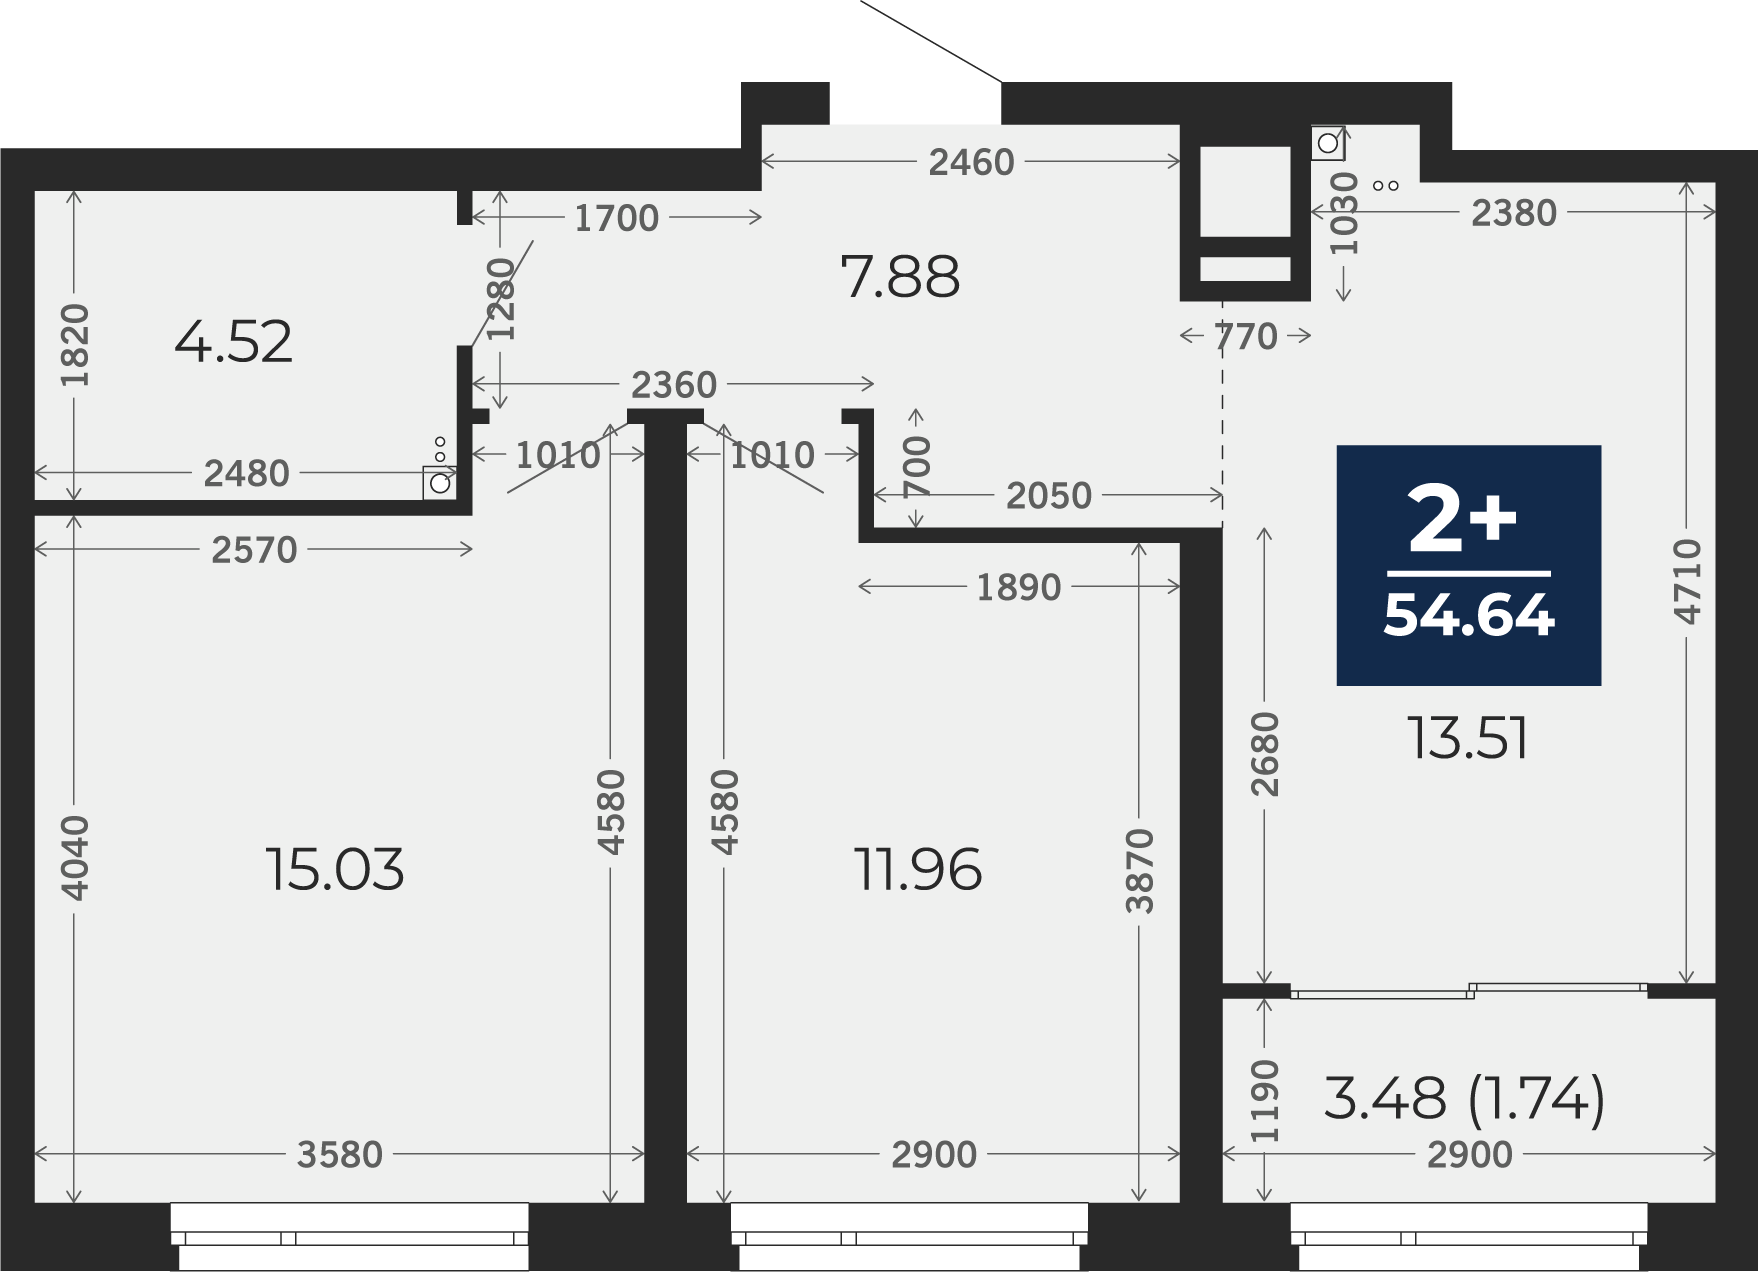 Квартира № 257, 2-комнатная, 54.64 кв. м, 15 этаж